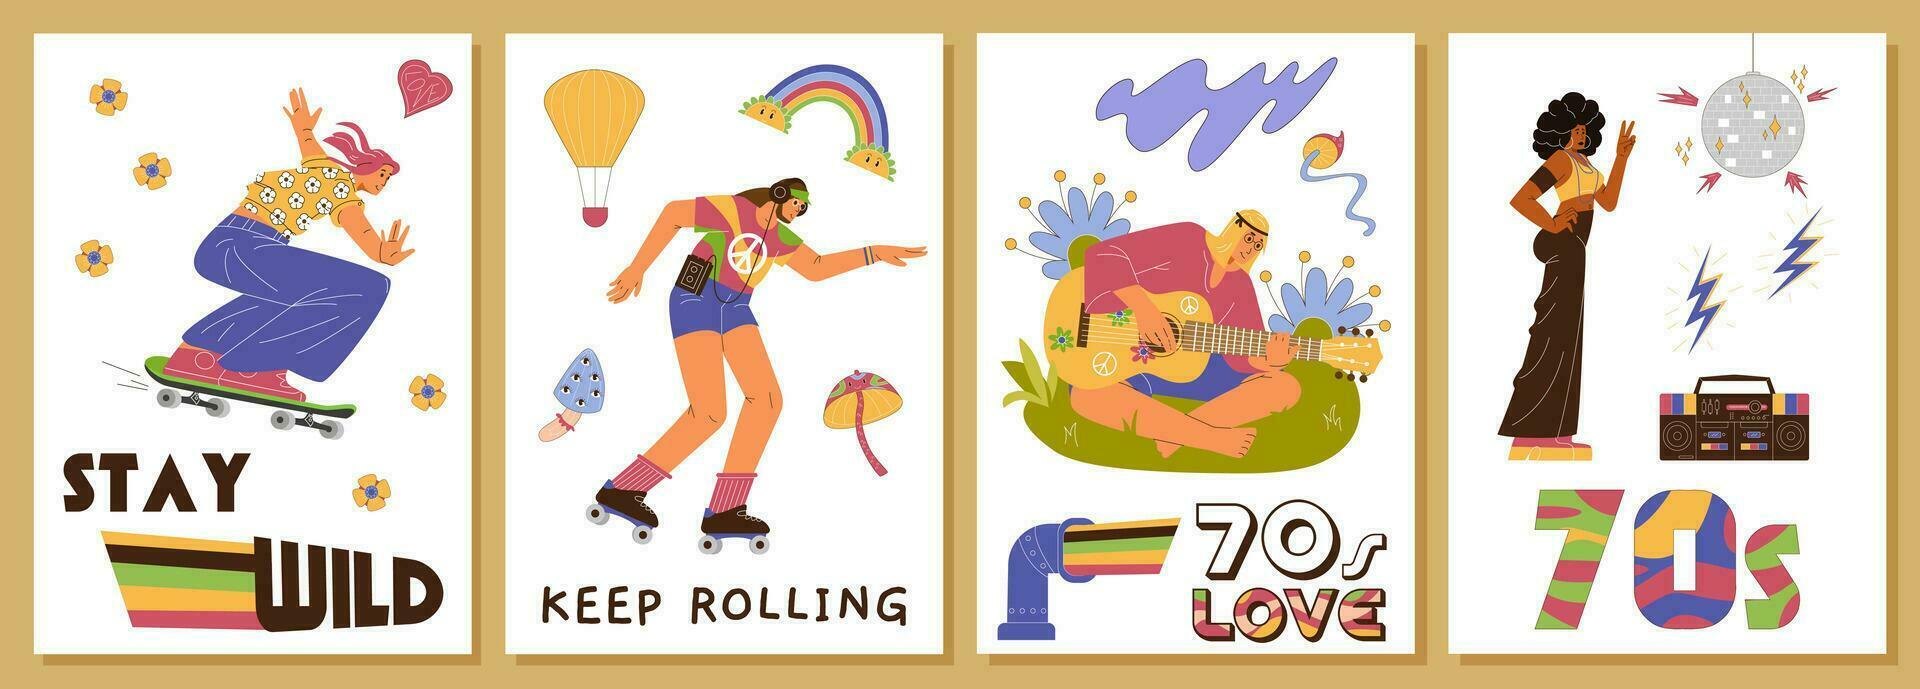 jaren 70 stijl posters met vector retro illustraties. wijnoogst prints met mensen van de jaren 70. hippies, disco danser, rol schaatser karakters.